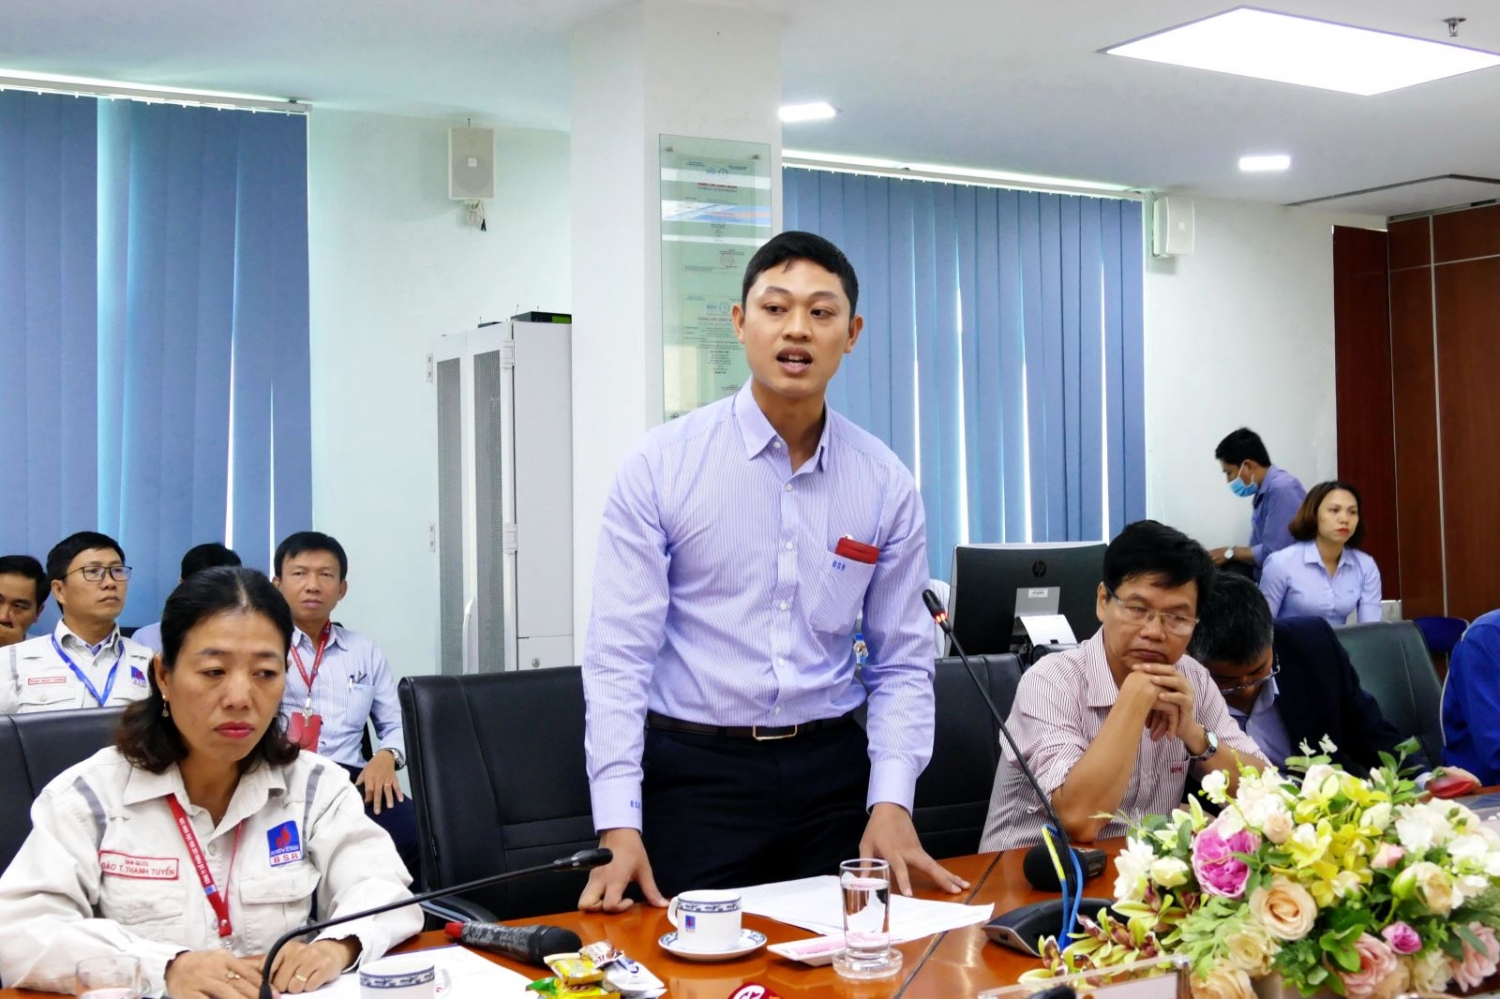 Phó Chủ tịch Quốc hội Trần Quang Phương tiếp xúc cử tri tại Công ty cổ phần Lọc hóa dầu Bình Sơn